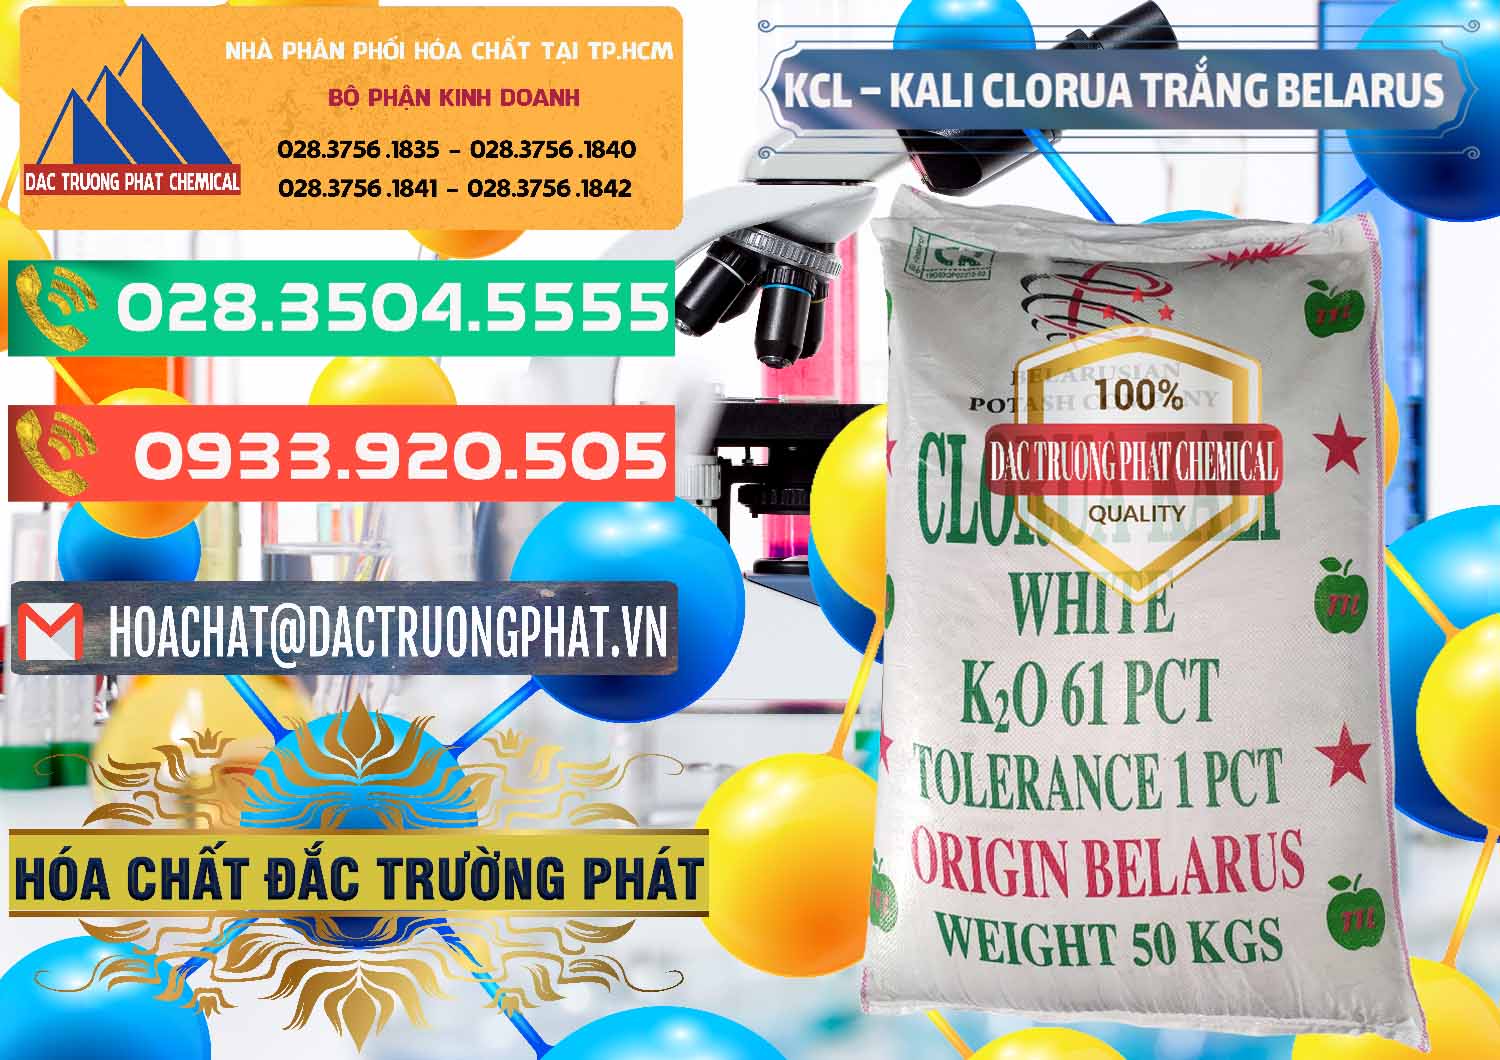 Công ty nhập khẩu và bán KCL – Kali Clorua Trắng Belarus - 0085 - Công ty chuyên bán ( phân phối ) hóa chất tại TP.HCM - congtyhoachat.com.vn